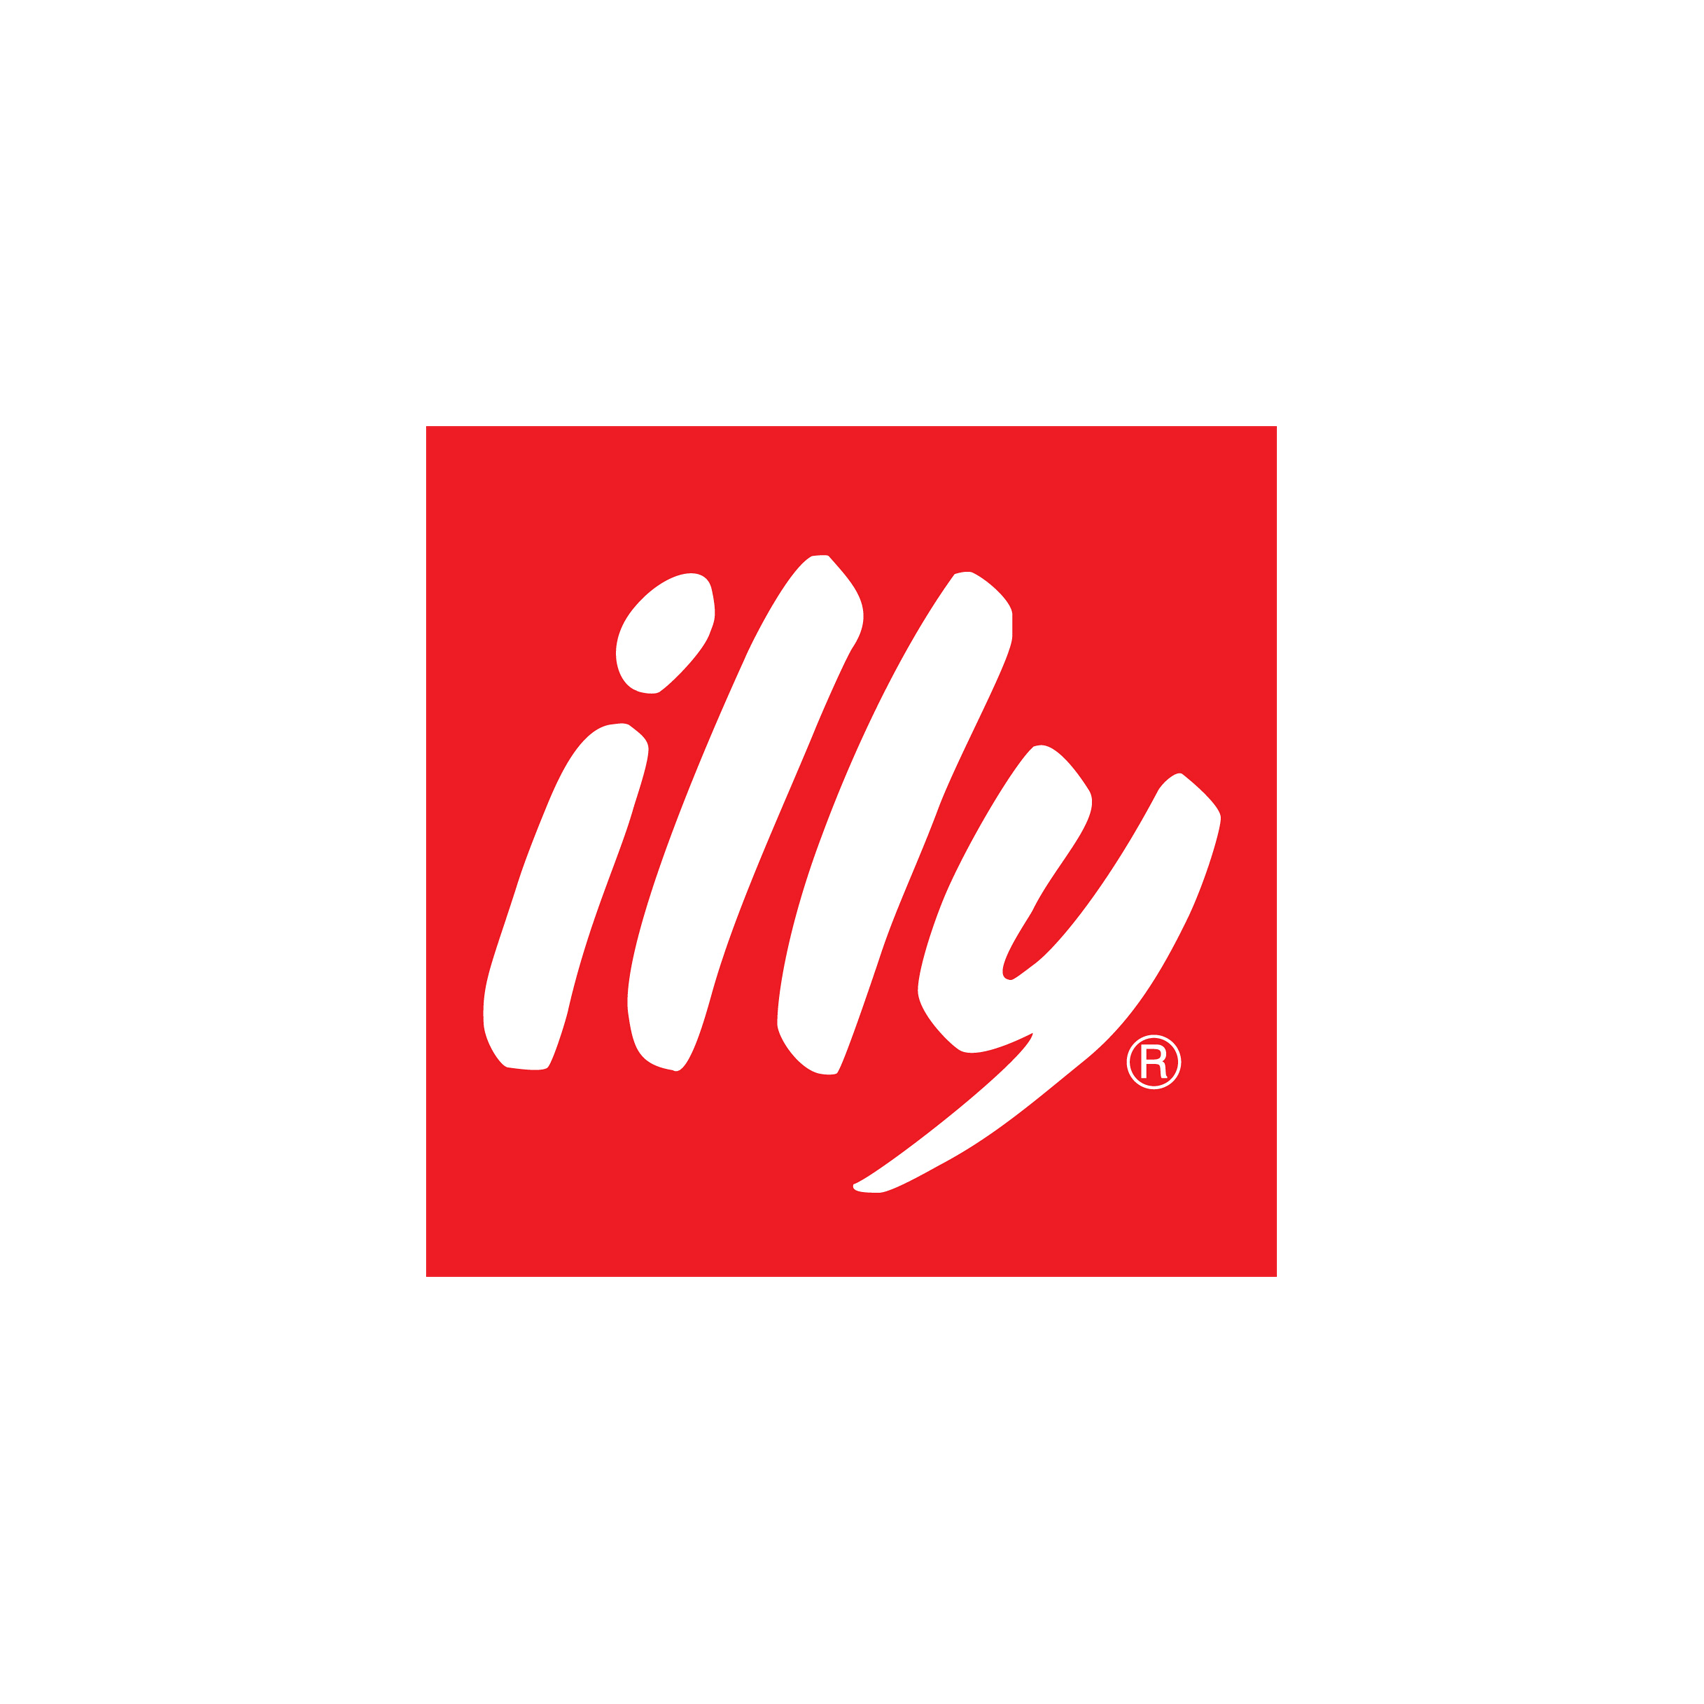 logo de illy